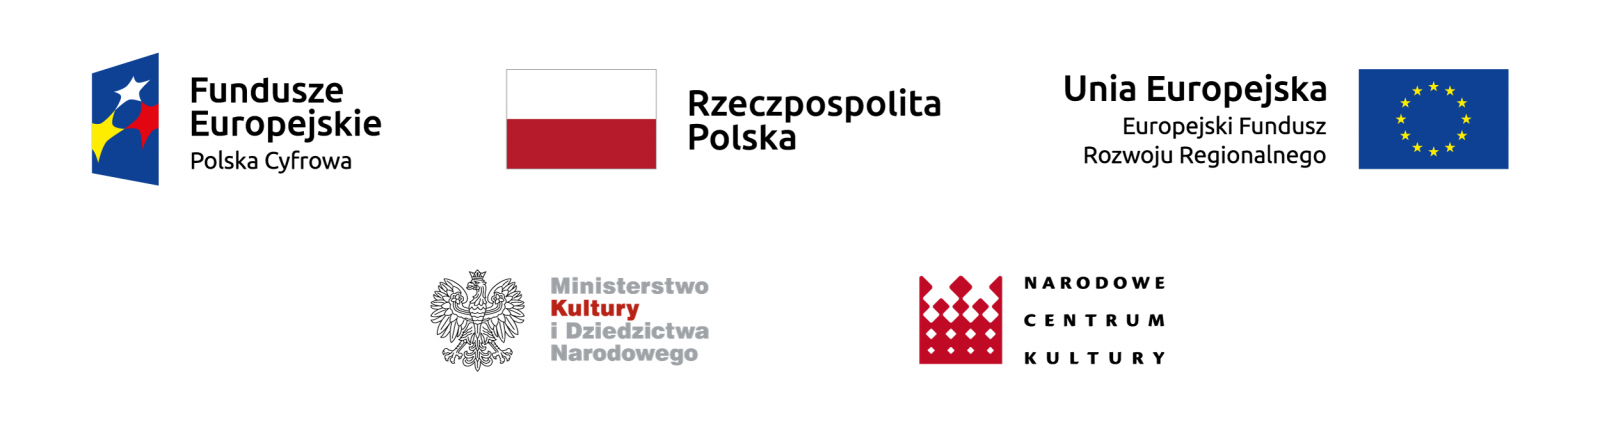 Logotypy konwersja cyfrowa domów kultury